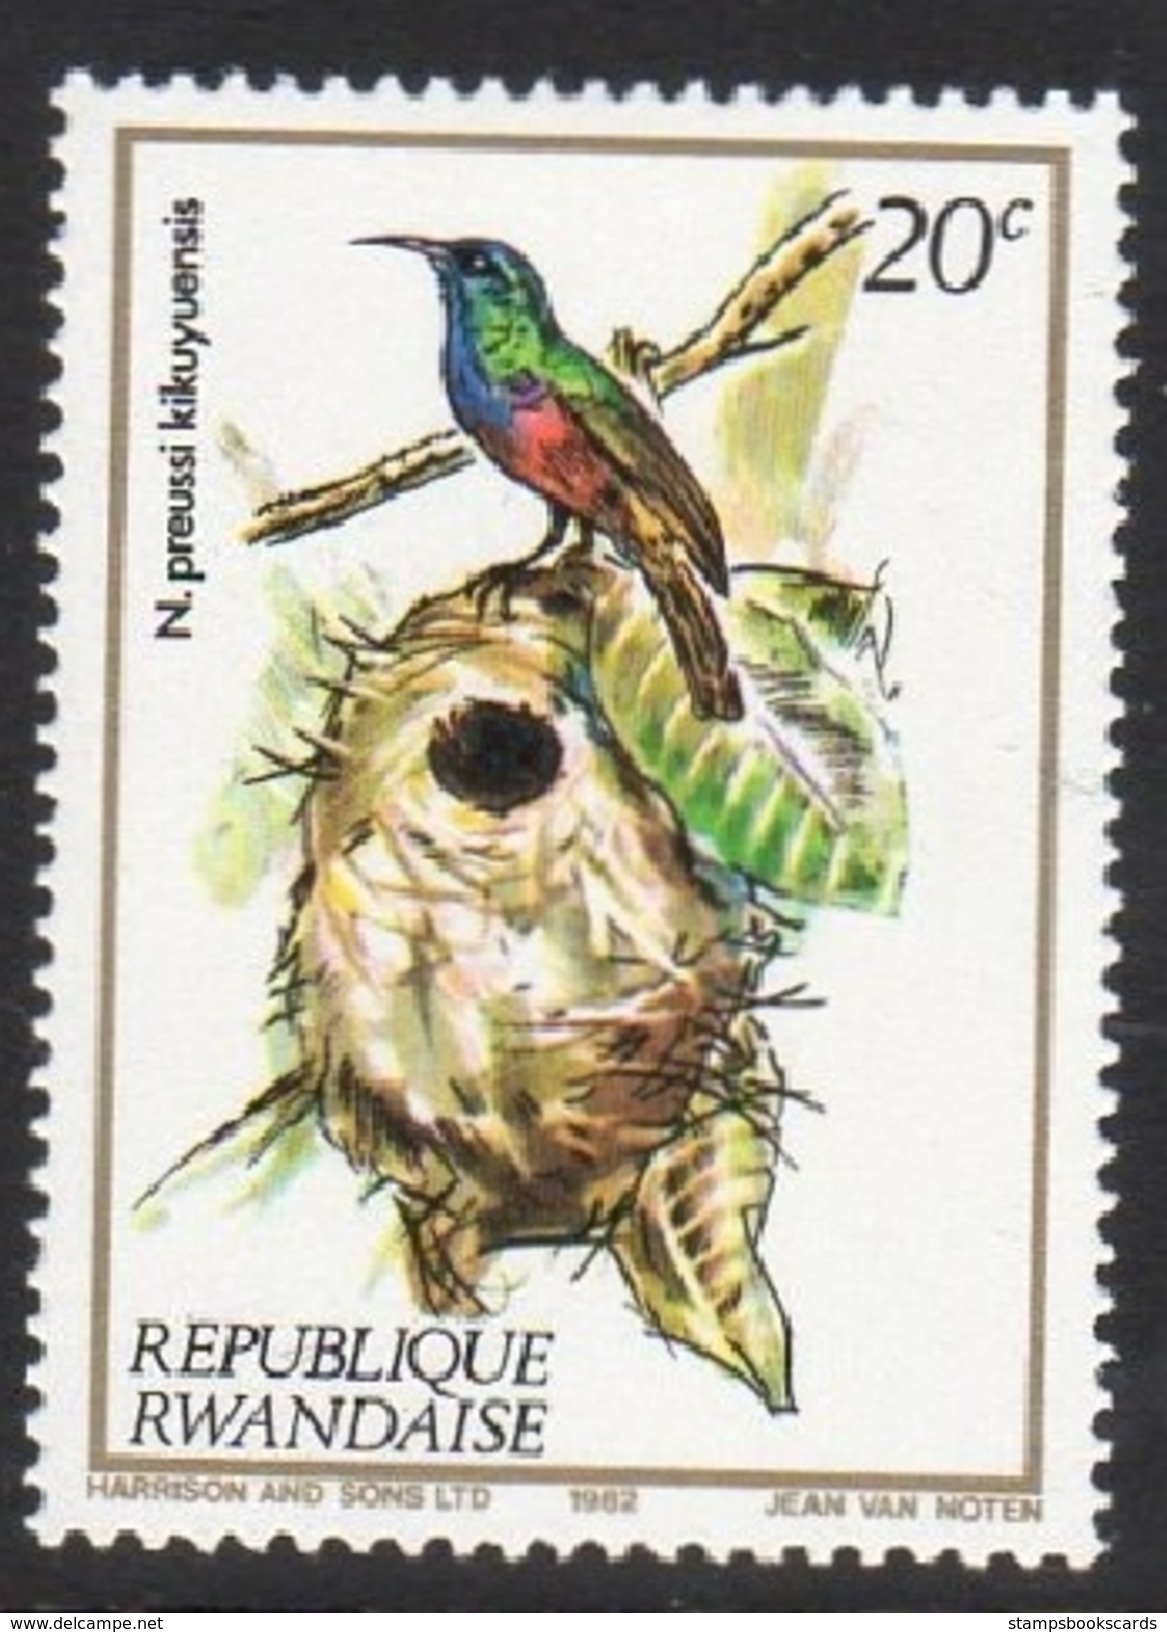 N. Preussi Kikuyuensis Mounted Mint Stamp - Songbirds & Tree Dwellers